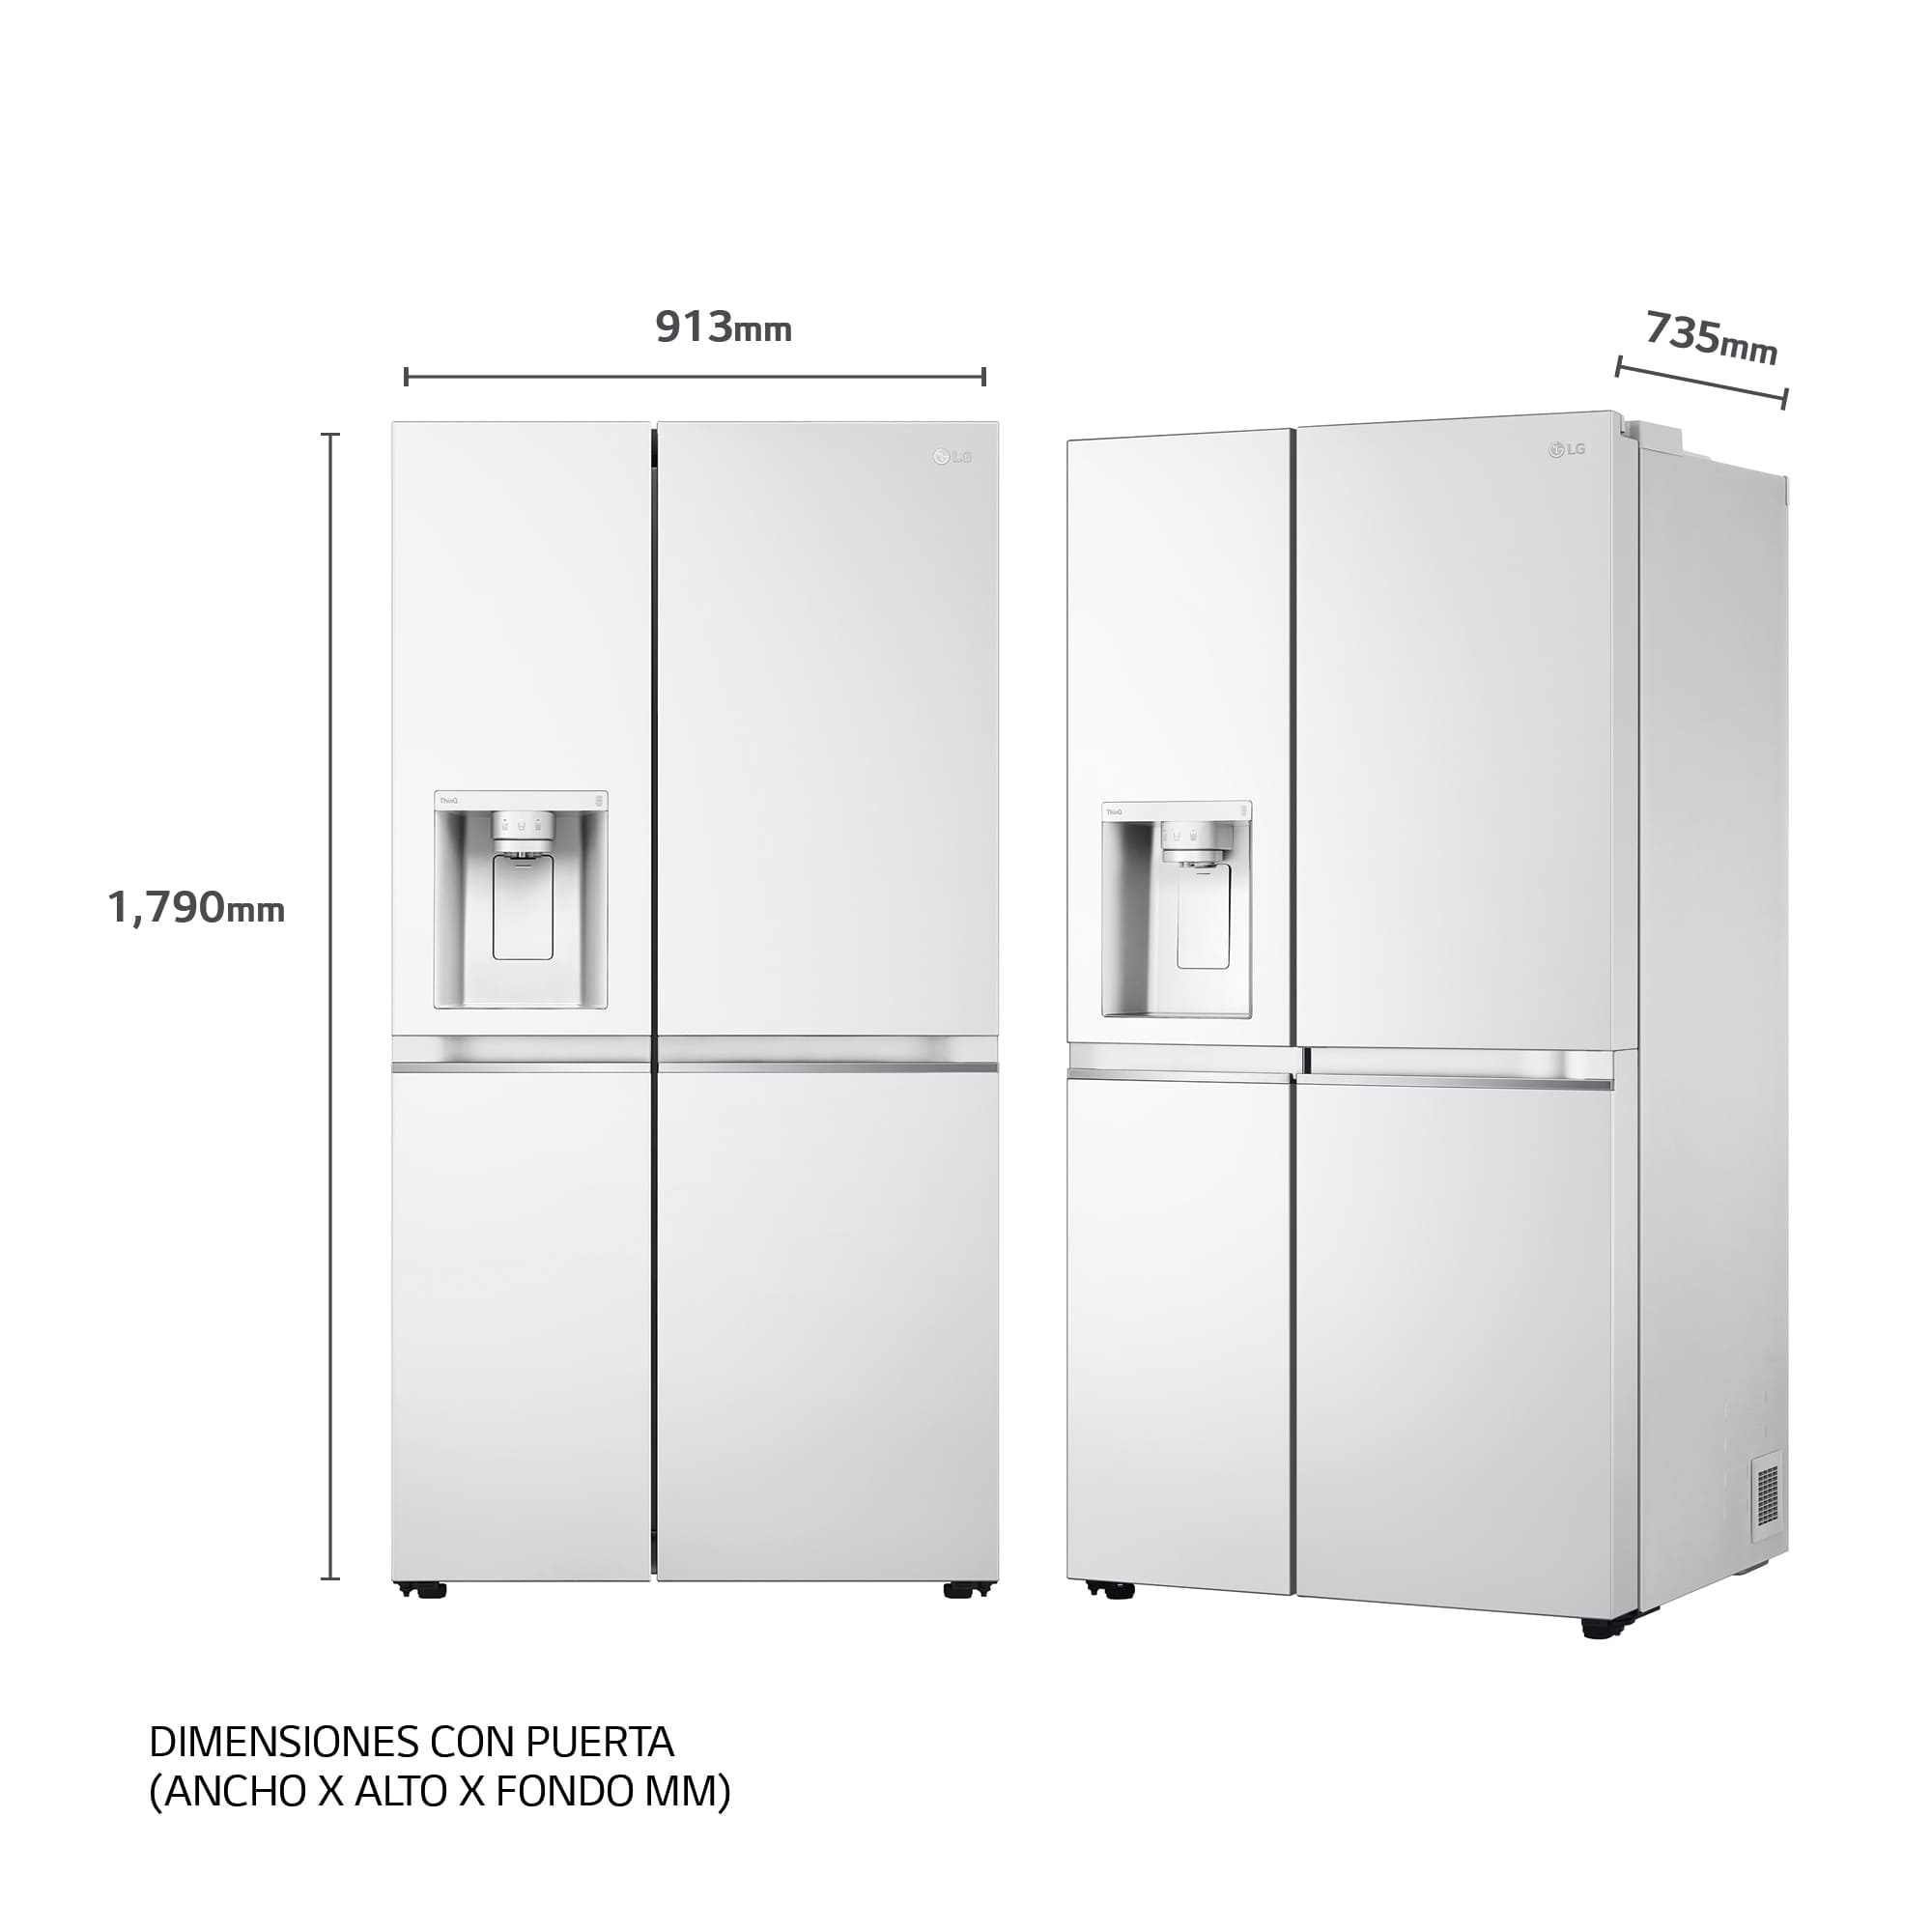 Medidas de los frigoríficos según dimensiones, tipos y fabricantes